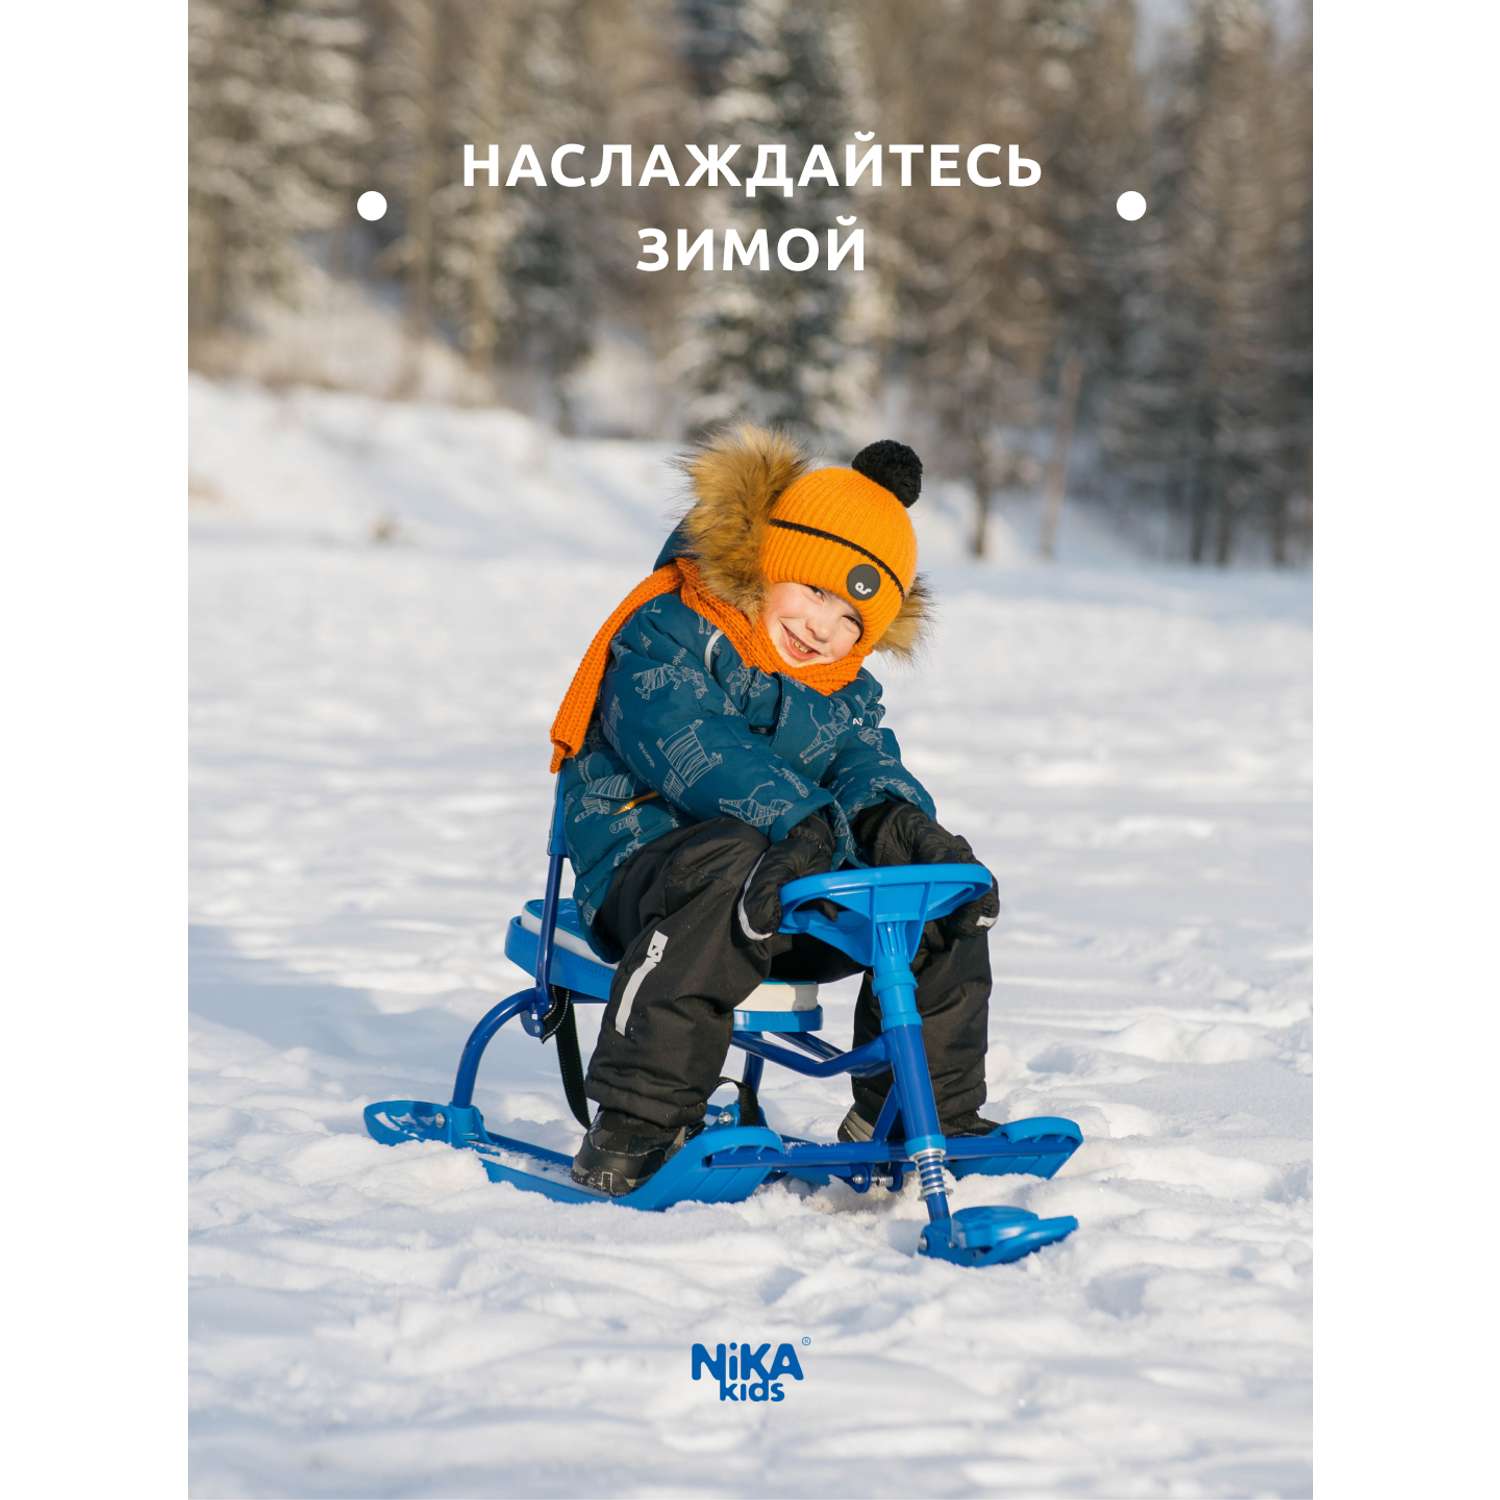 Детский снегокат Nika kids с усиленным тормозом и тросом для зимних прогулок - фото 5